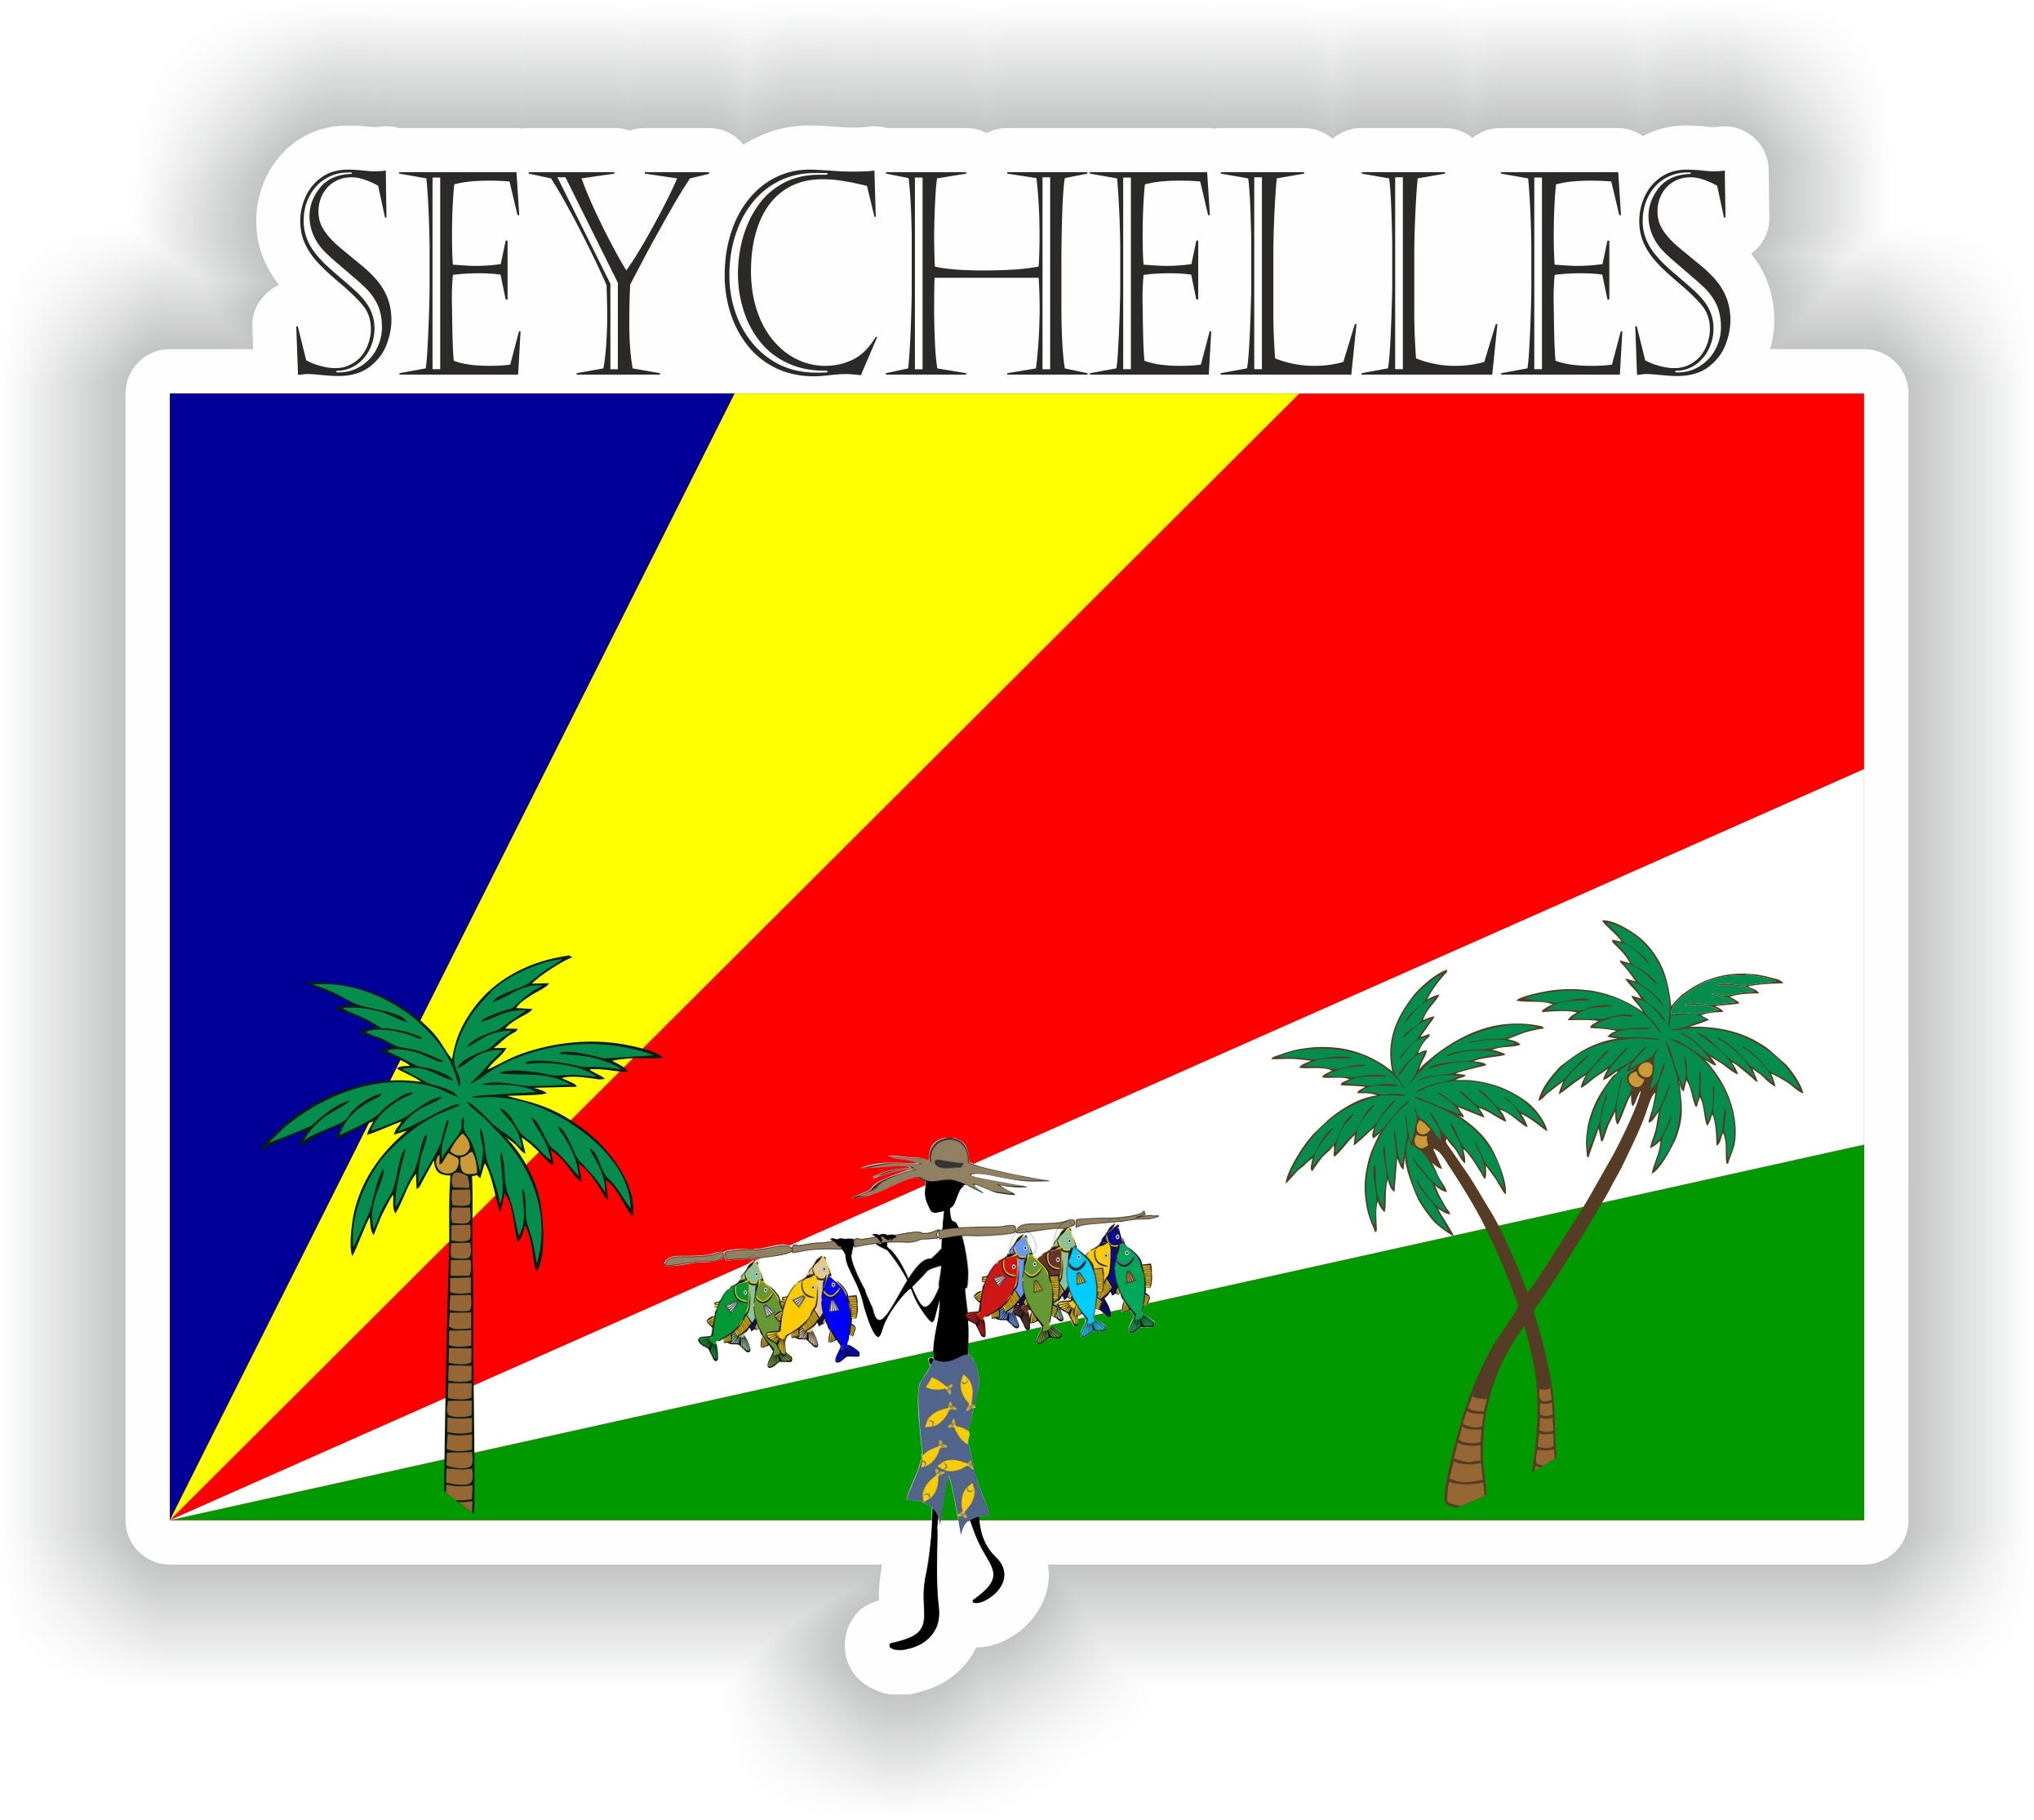 Seychelles Sticker Flag MF for Laptop Book Fridge Guitar